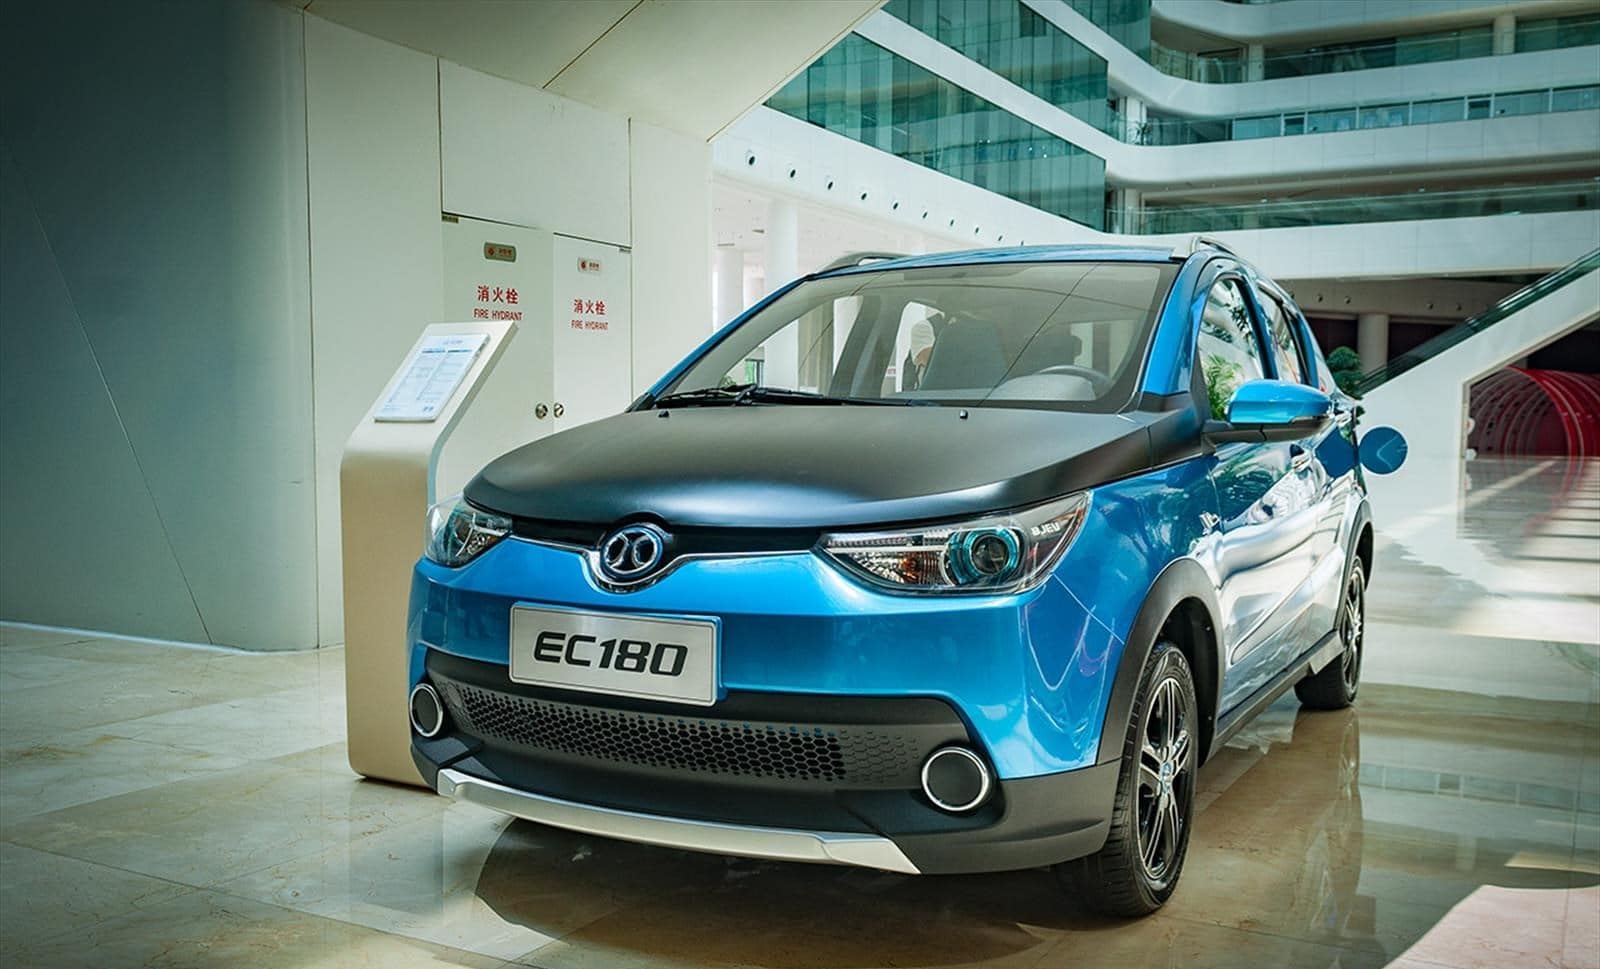 découvrez les dernières innovations en matière de voiture électrique chinoise, alliant performance, technologie et durabilité.